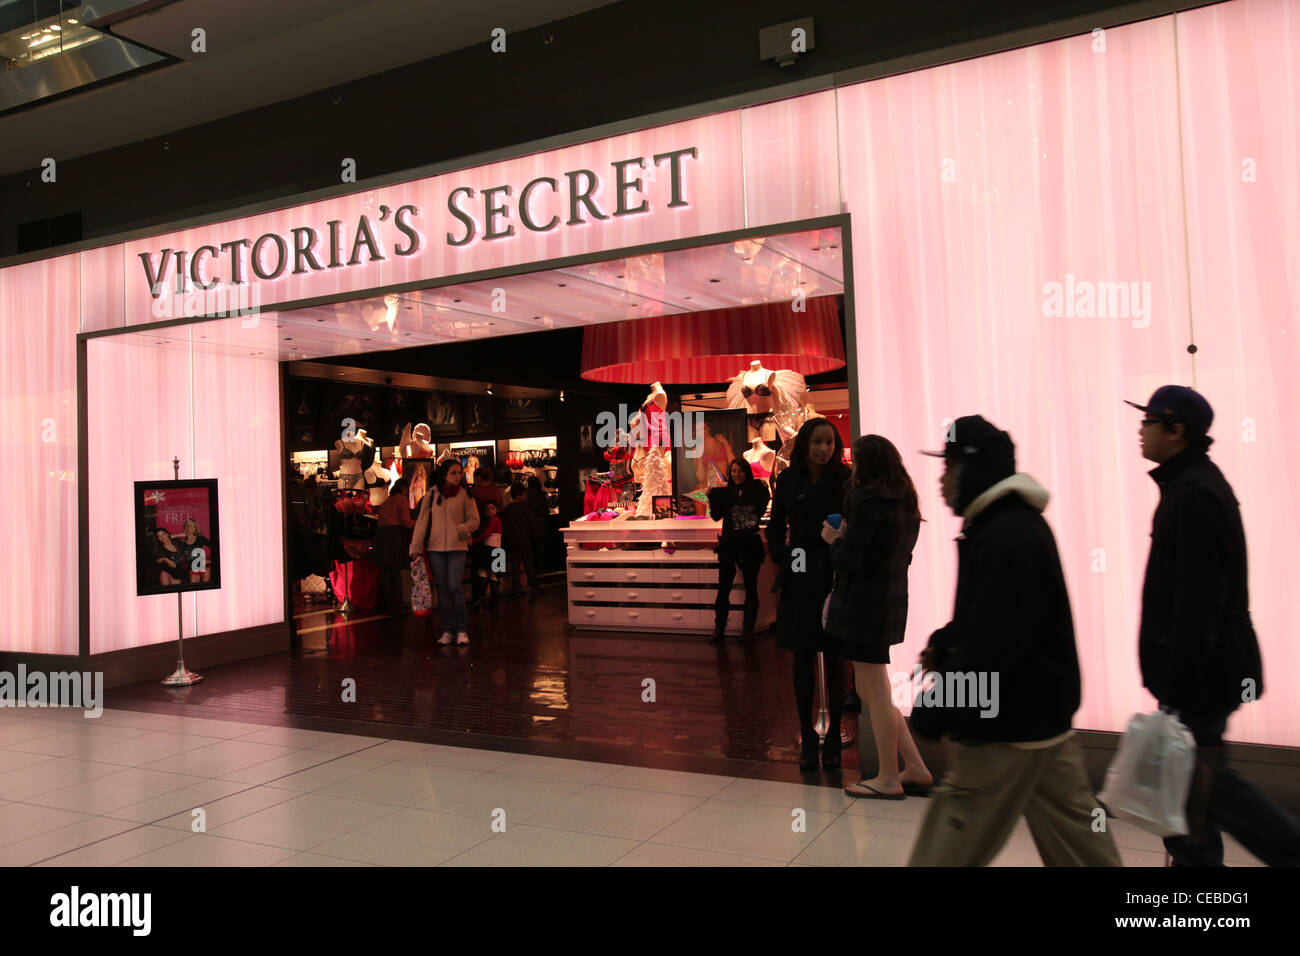 Victoria's Secret store in Toronto Eaton Centre Foto stock - Alamy